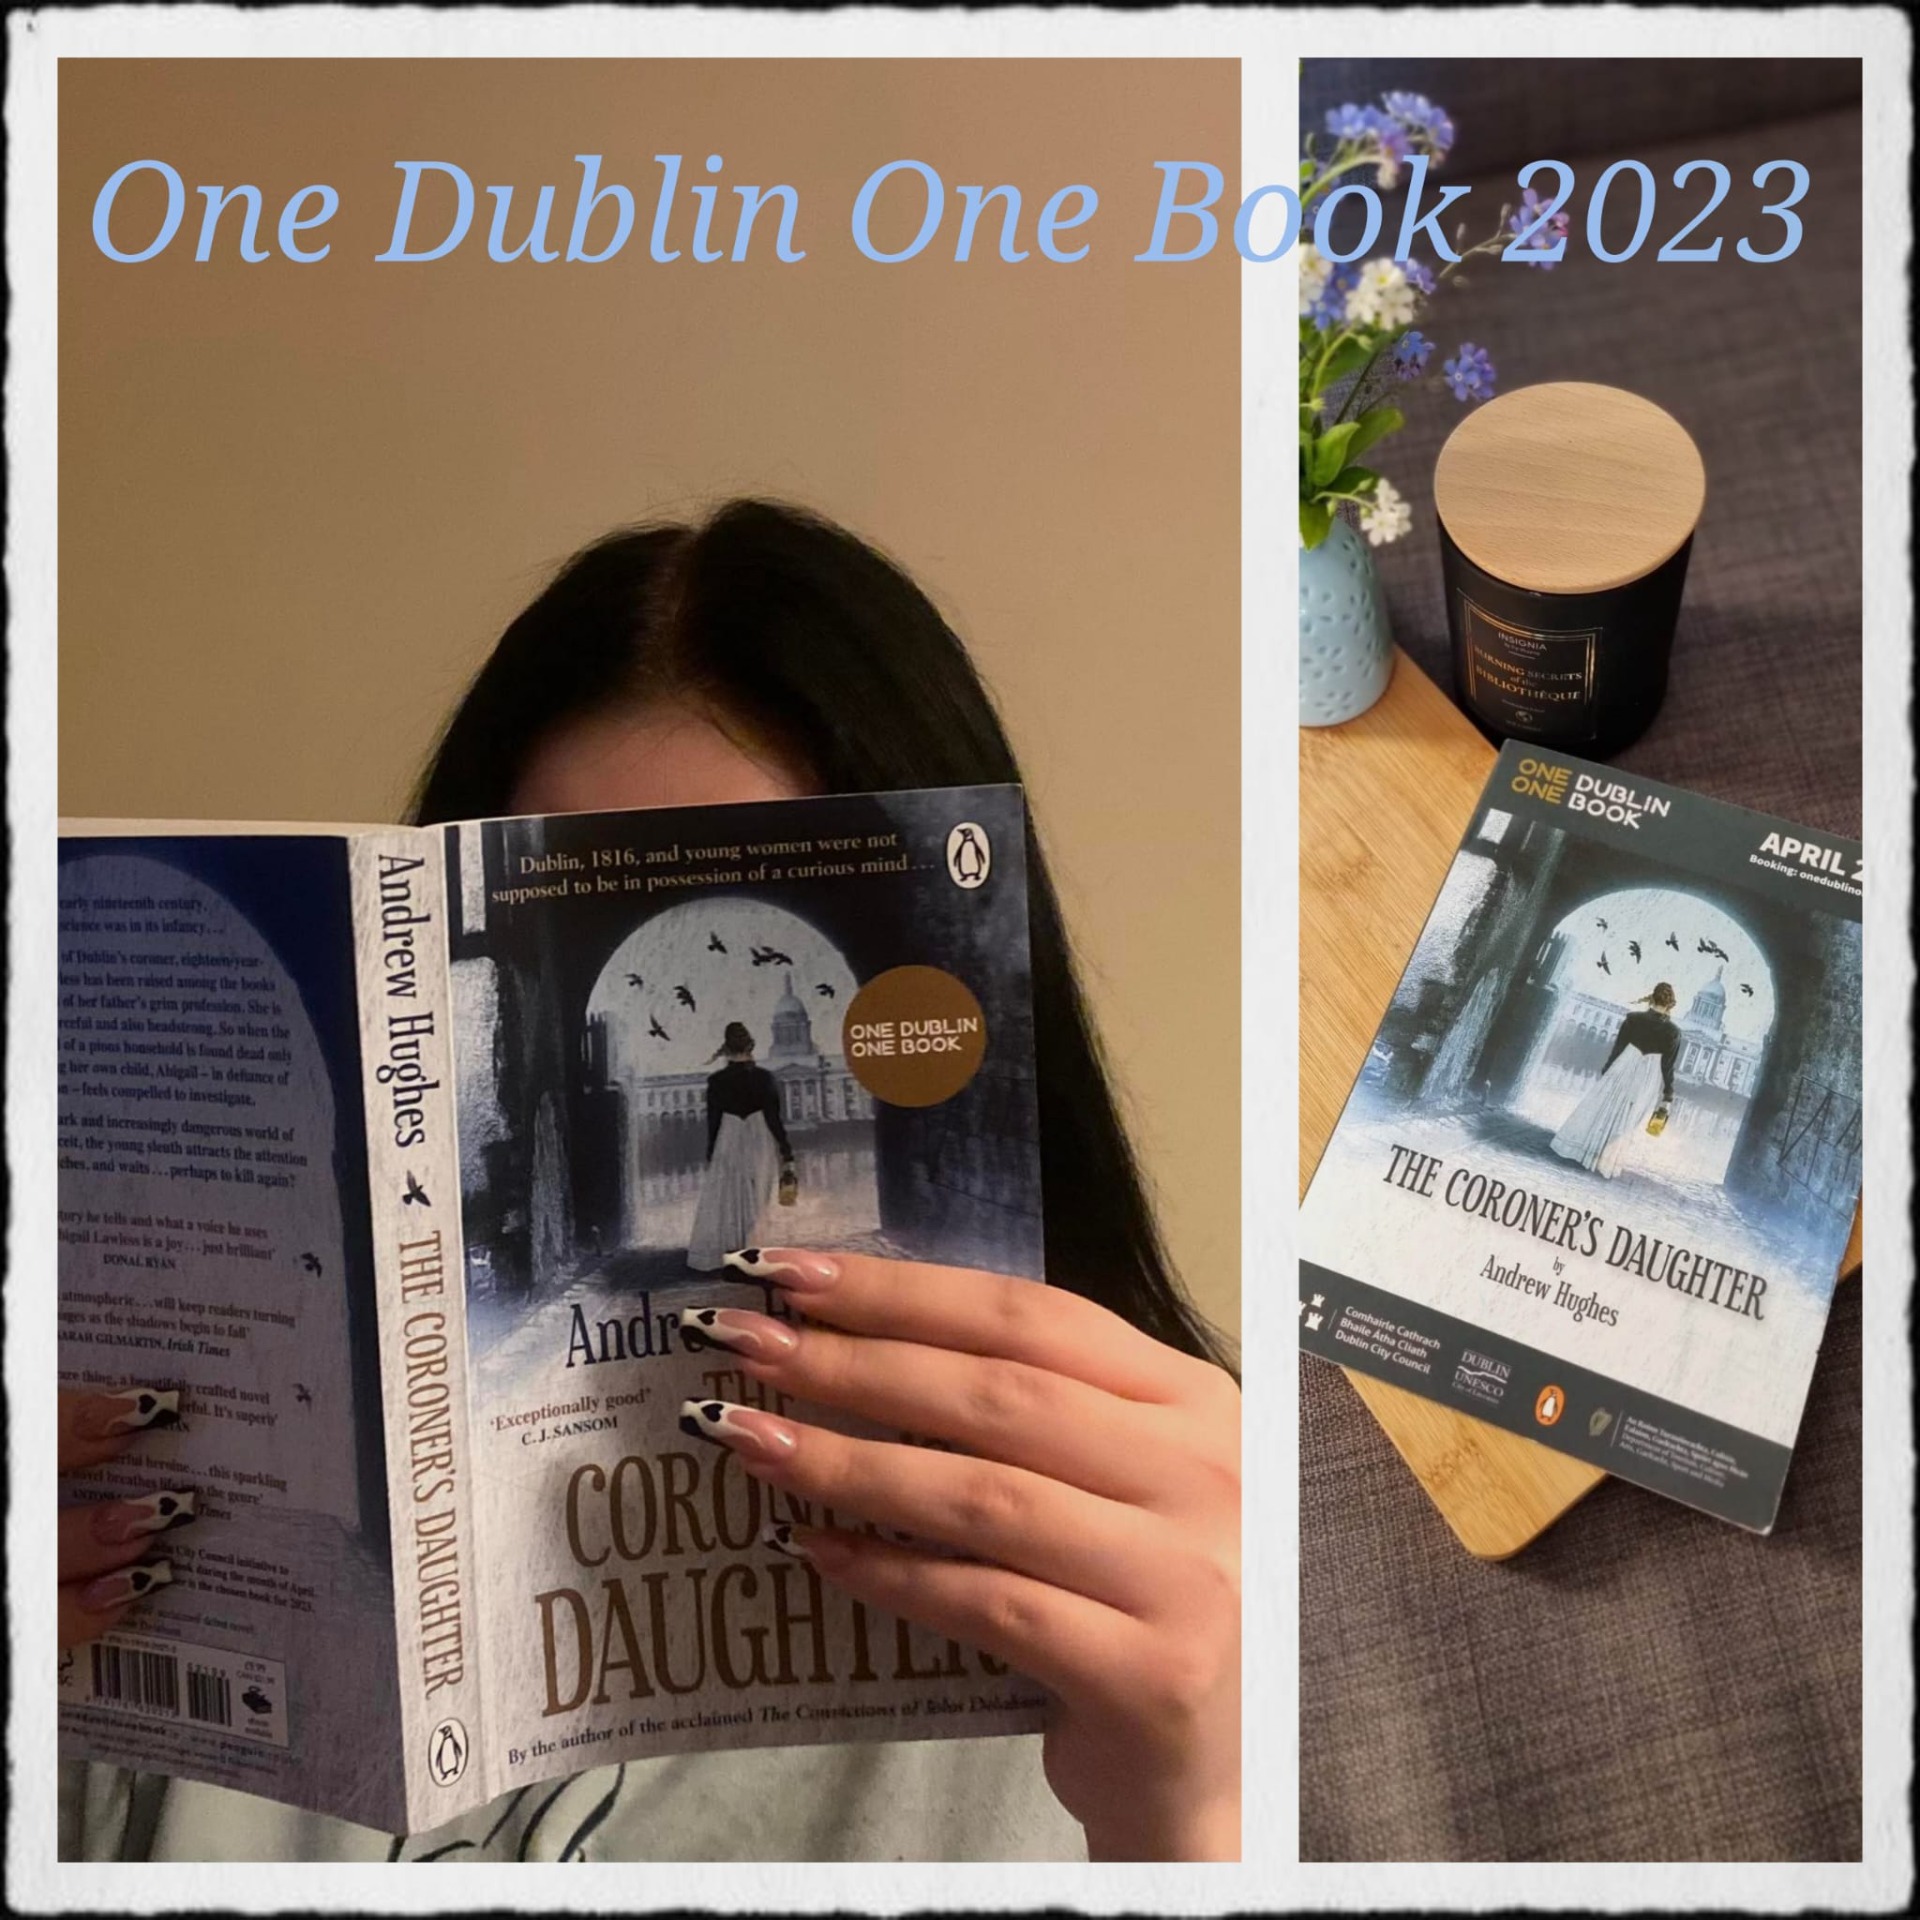 One Dublin, one book